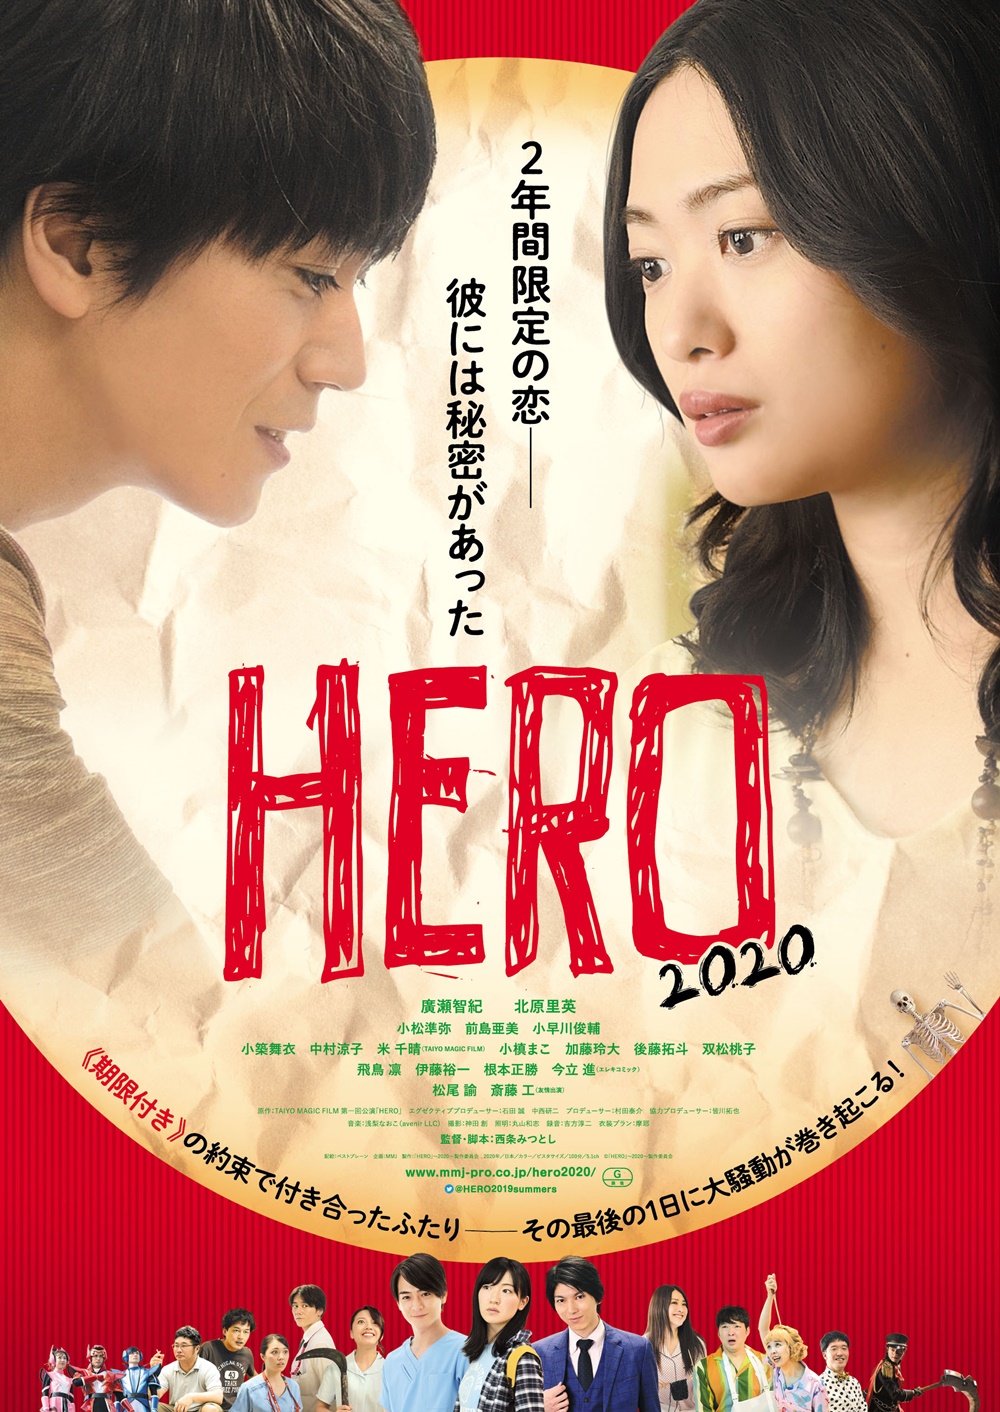 【画像】映画『HERO〜2020〜』ポスタービジュアル